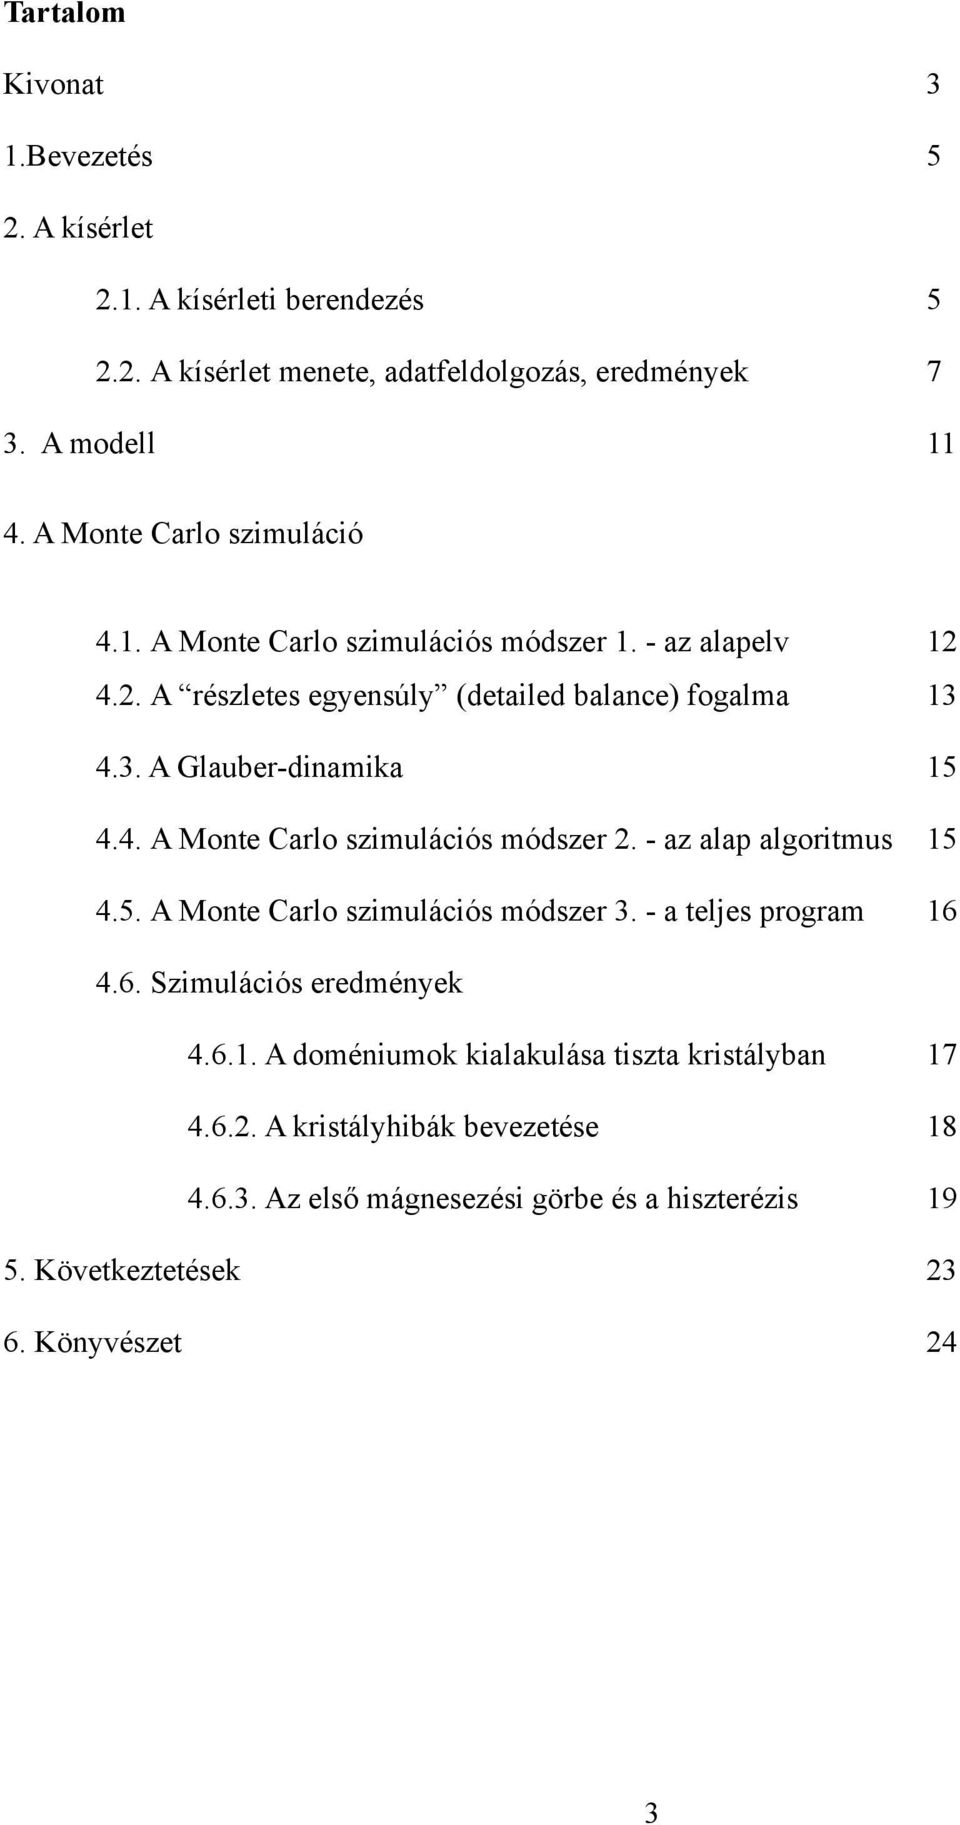 4. A Monte Carlo szimulációs módszer 2. - az alap algoritmus 15 4.5. A Monte Carlo szimulációs módszer 3. - a teljes program 16 4.6. Szimulációs eredmények 4.6.1. A doméniumok kialakulása tiszta kristályban 17 4.